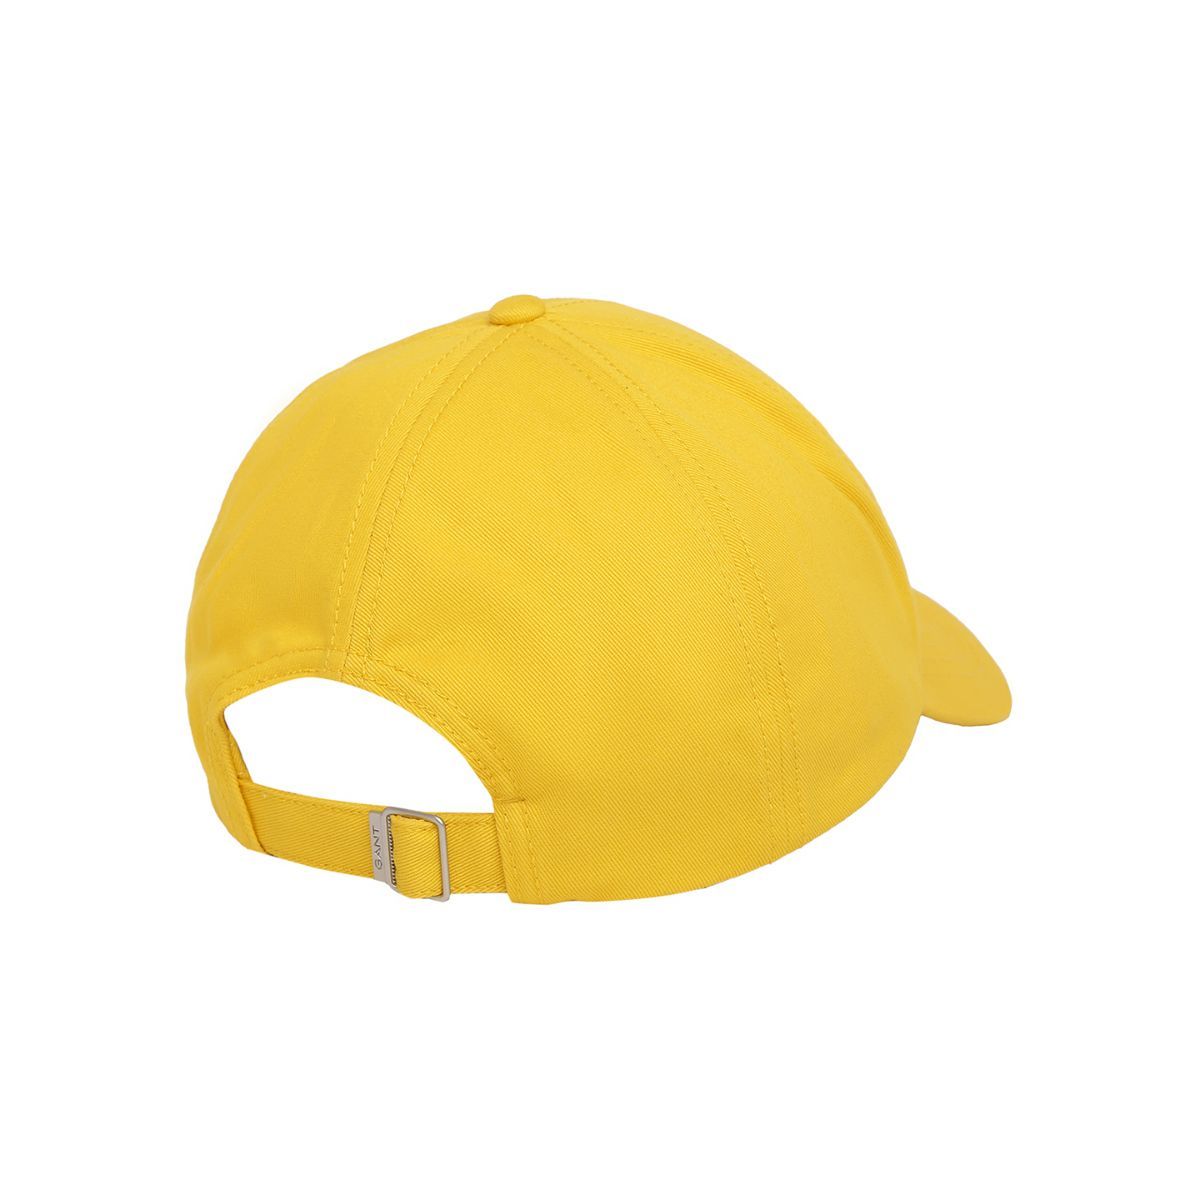 GANT Men Yellow Solid Cap: Buy GANT Men Yellow Solid Cap Online at Best ...